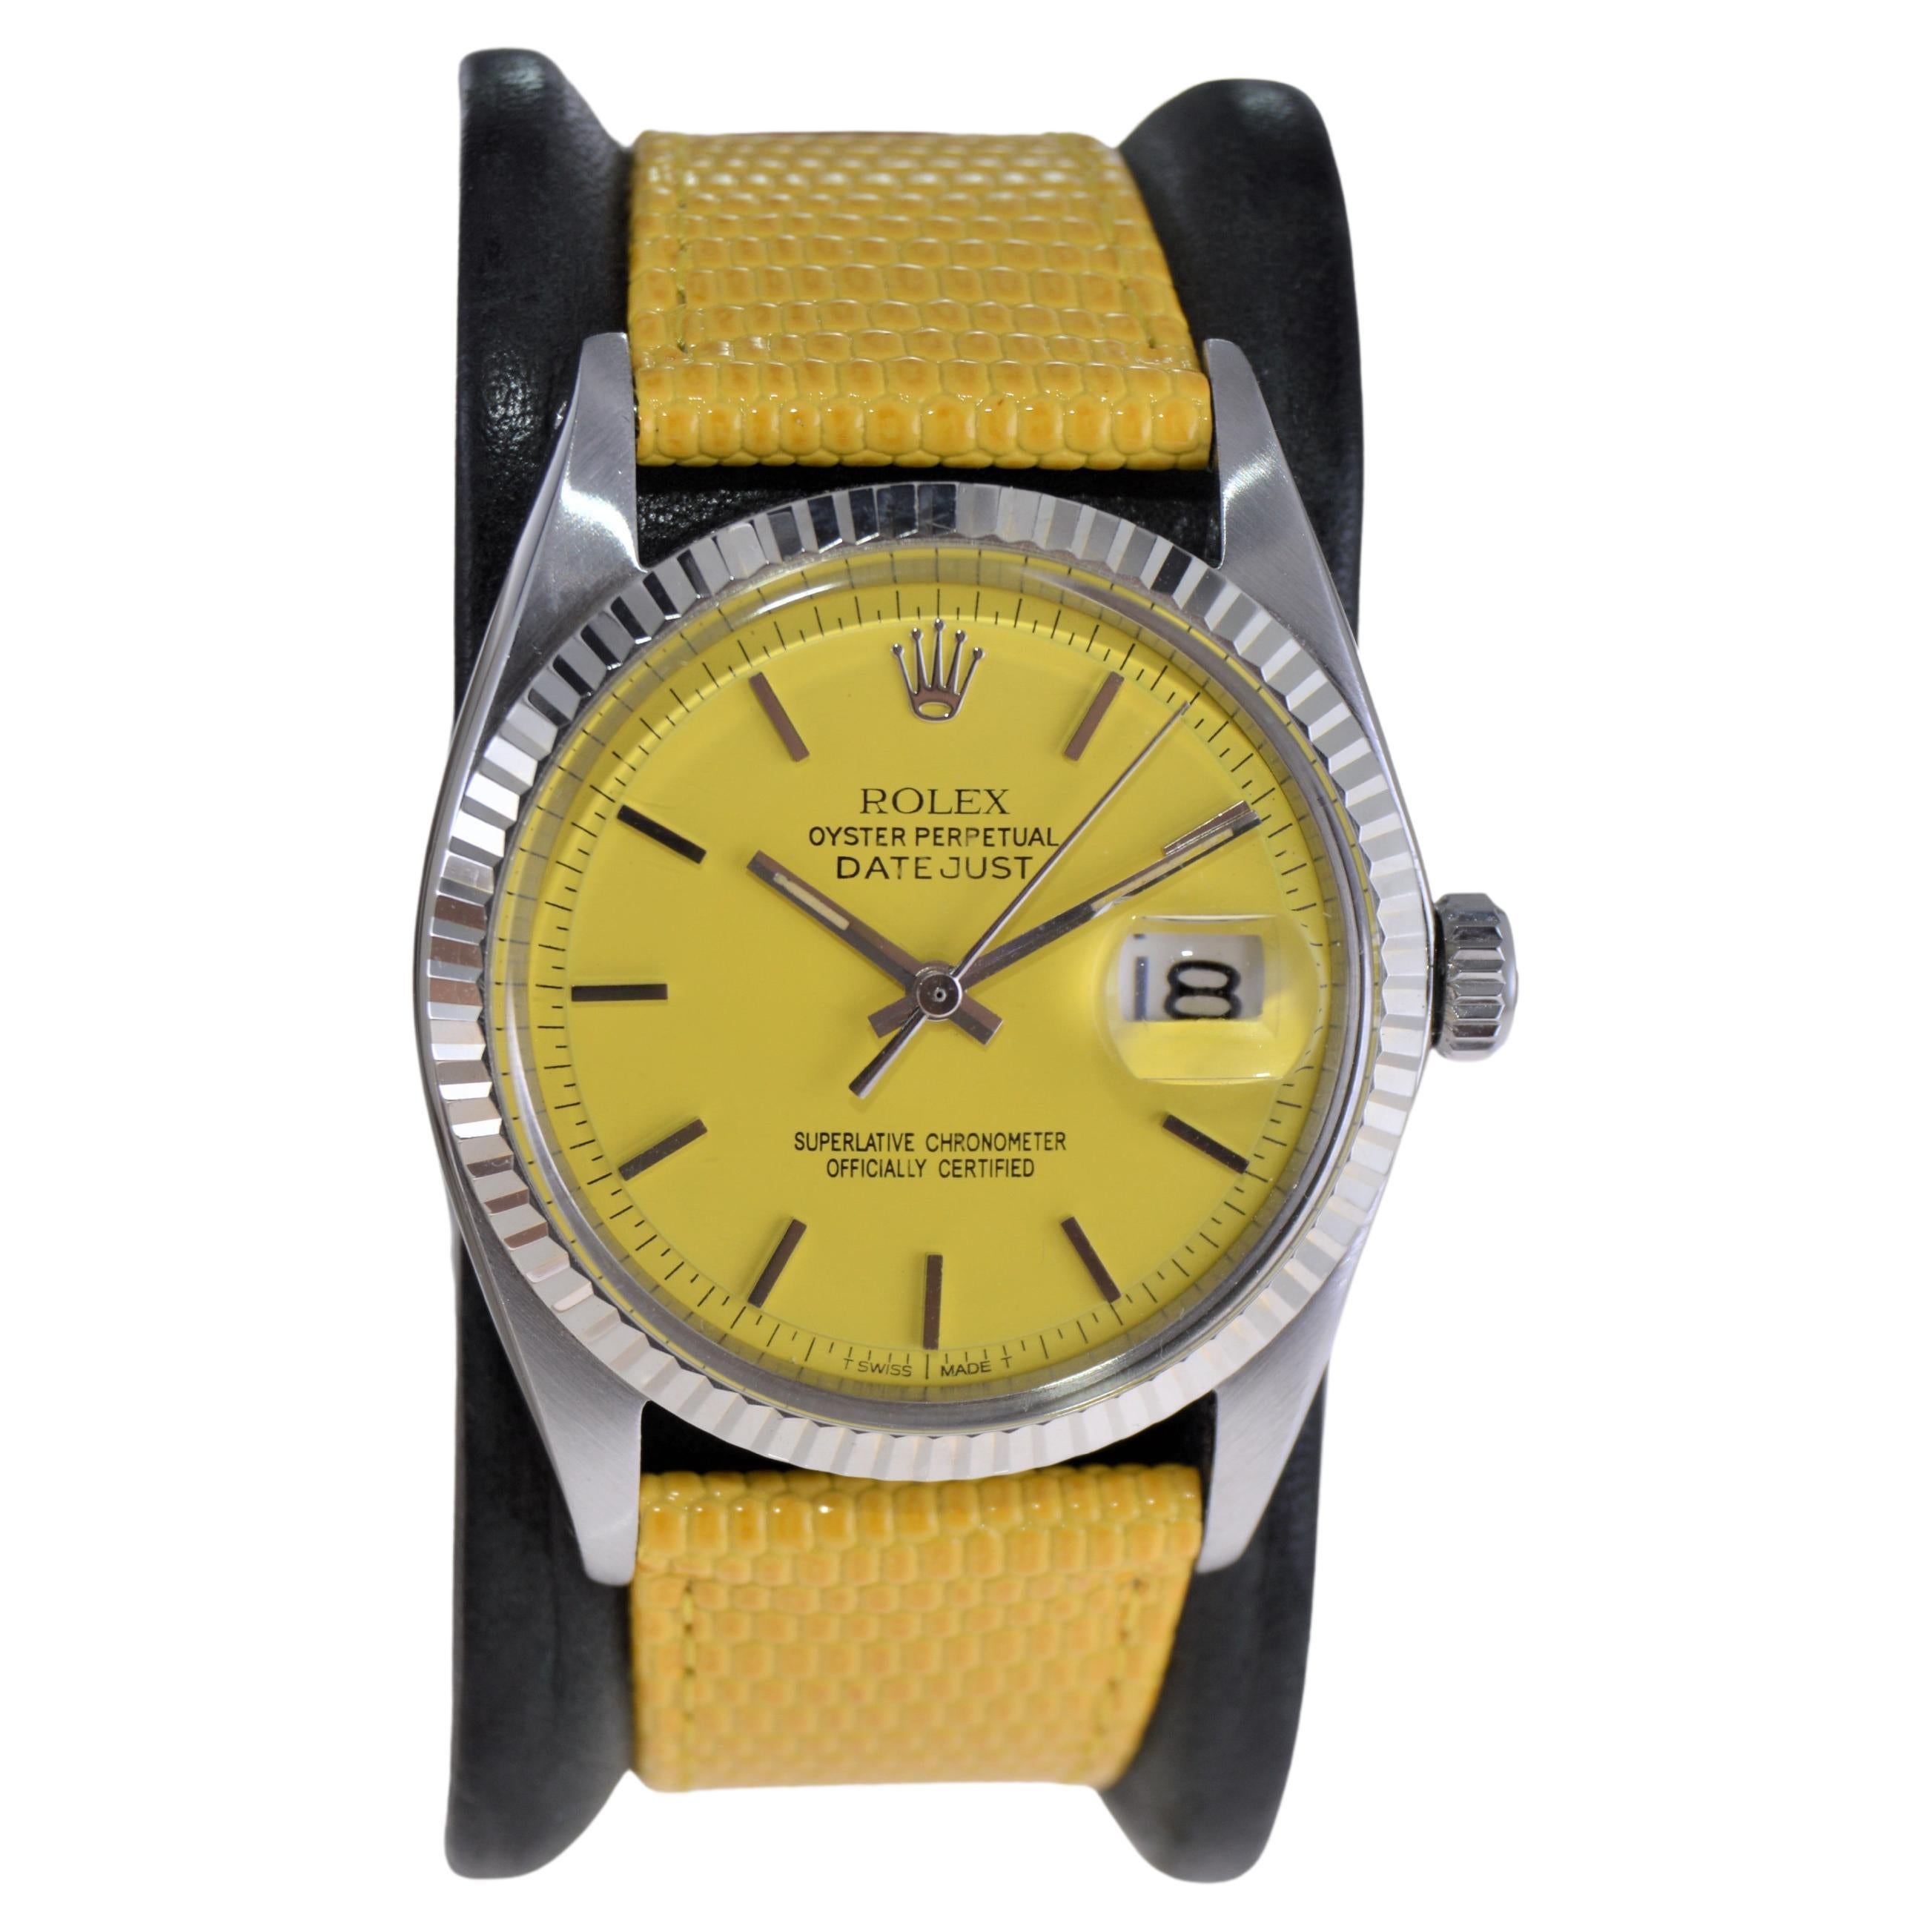 Rolex Oyster Perpetual Datejust avec cadran jaune personnalisé et bracelet des années 1970